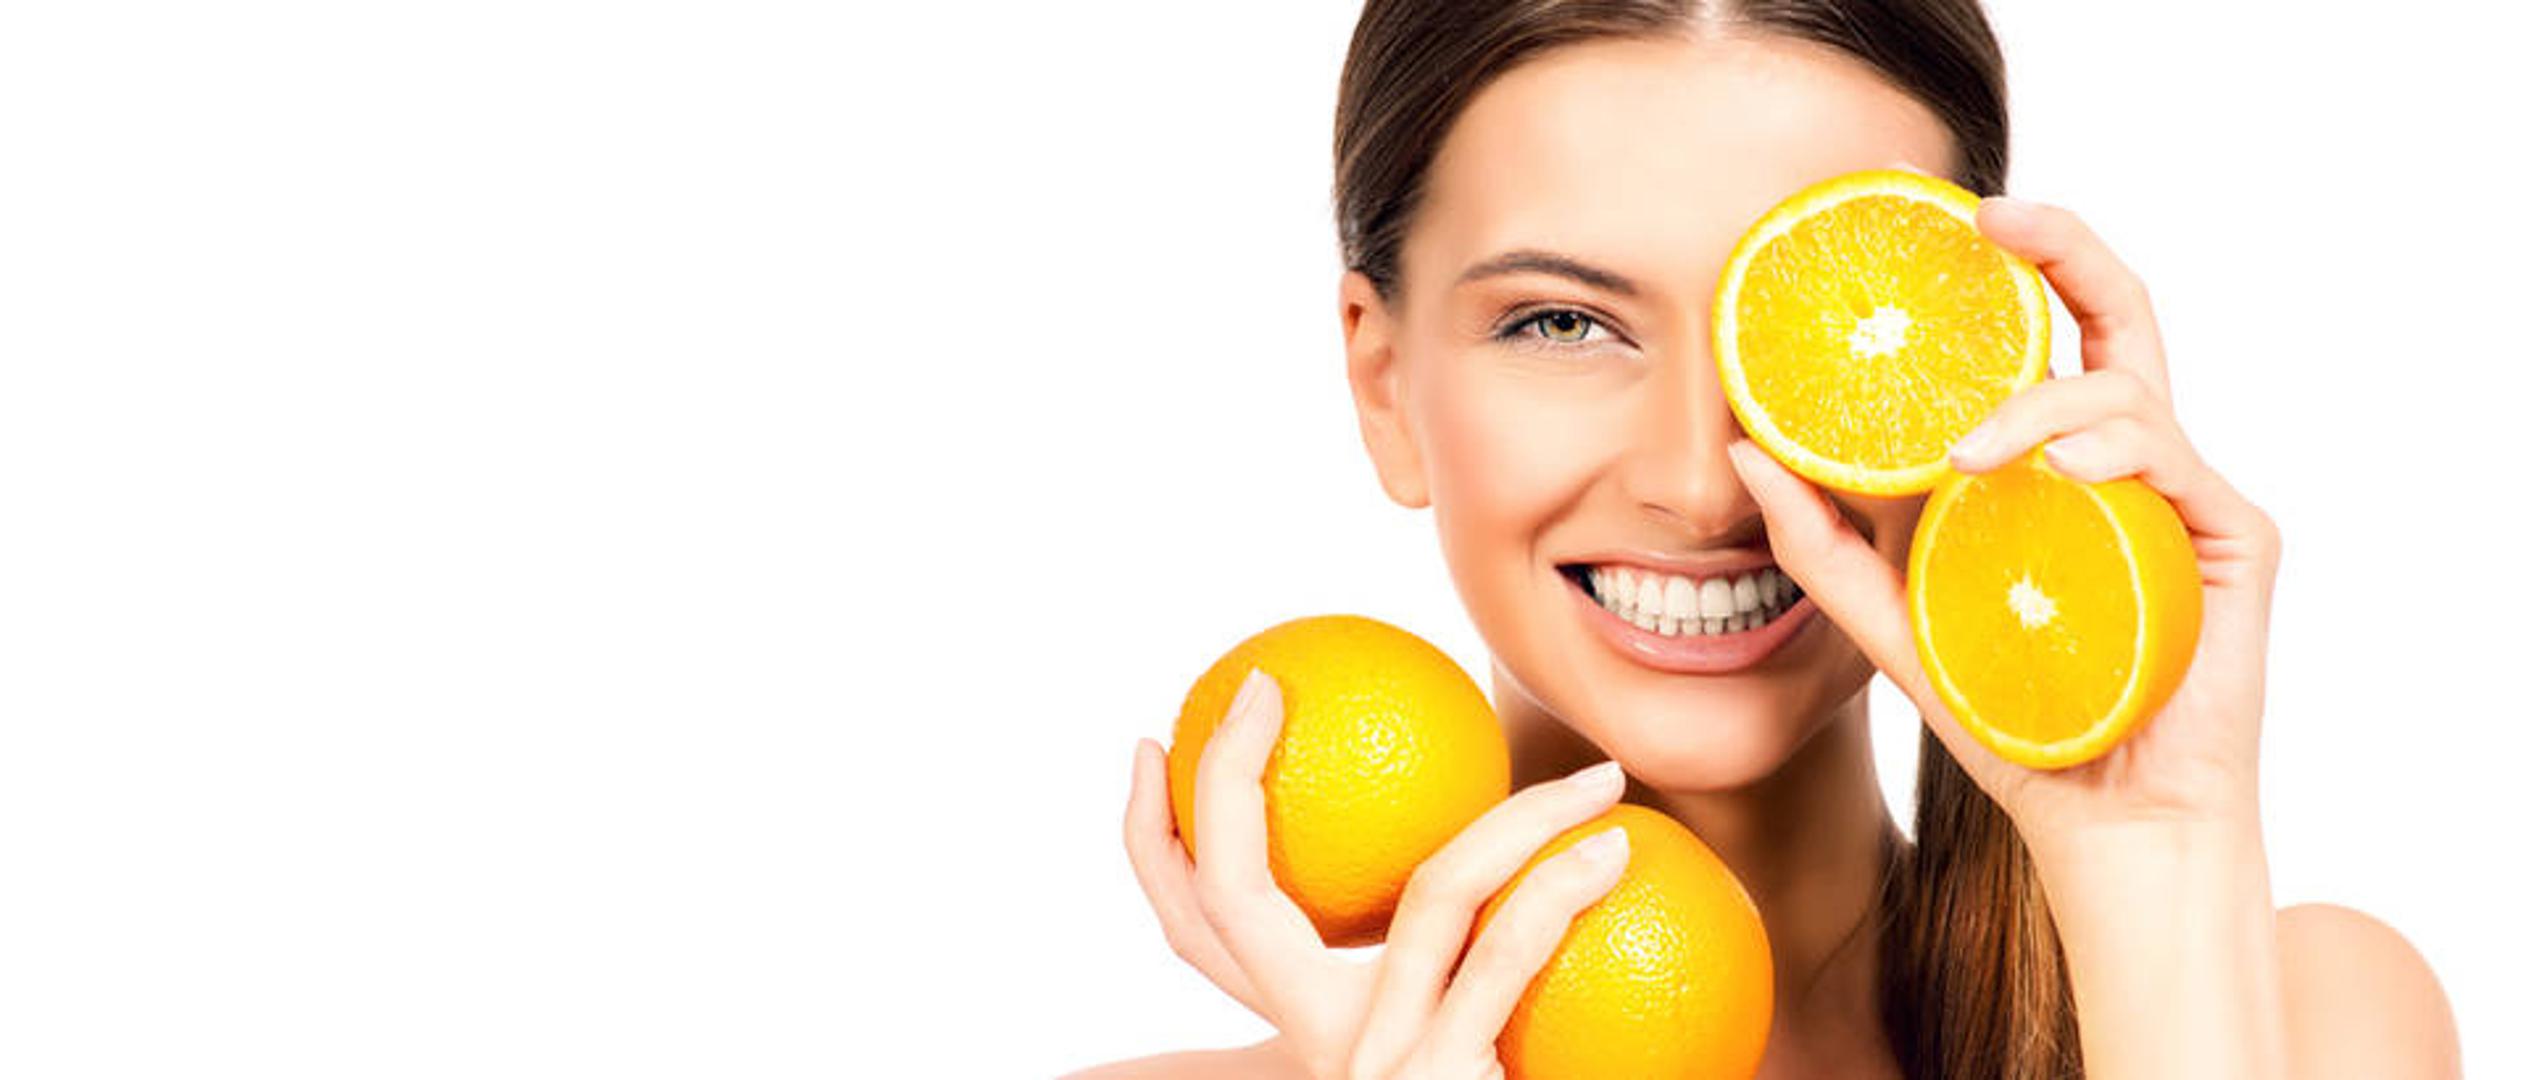 Naranče - Odličan su izbor ako se želite riješiti viška masnoće iz tijela. Sadrže malo kalorija, a obiluju vitaminom C i pružaju osjećaj sitosti. 